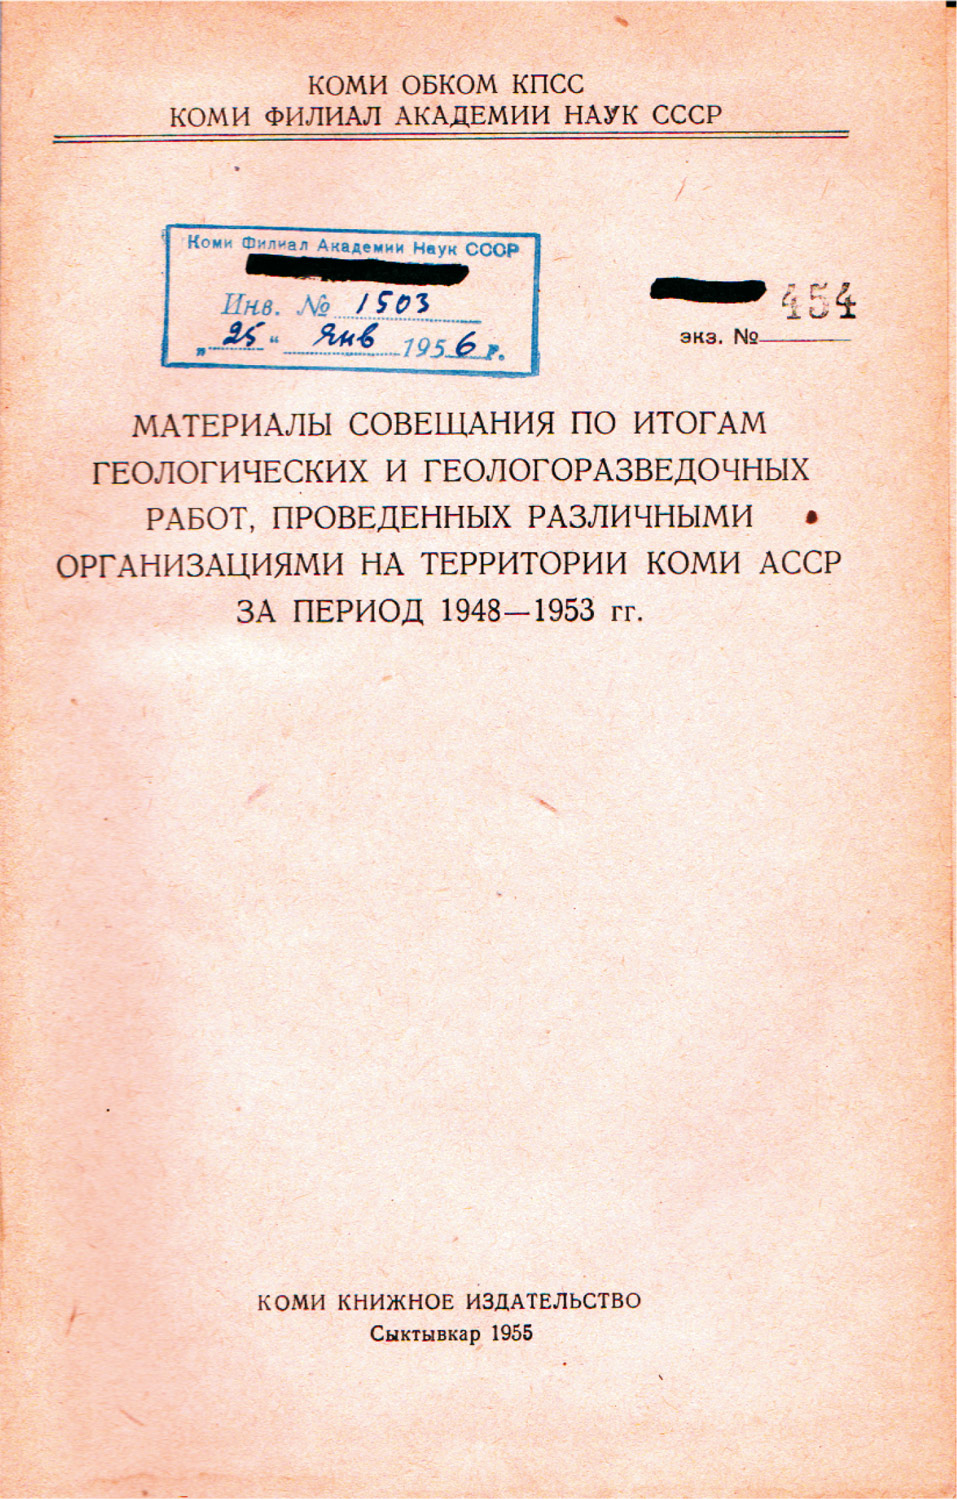 1955 г. Чернов А. А. Геологическое строение и полезные ископаемые Коми АССР